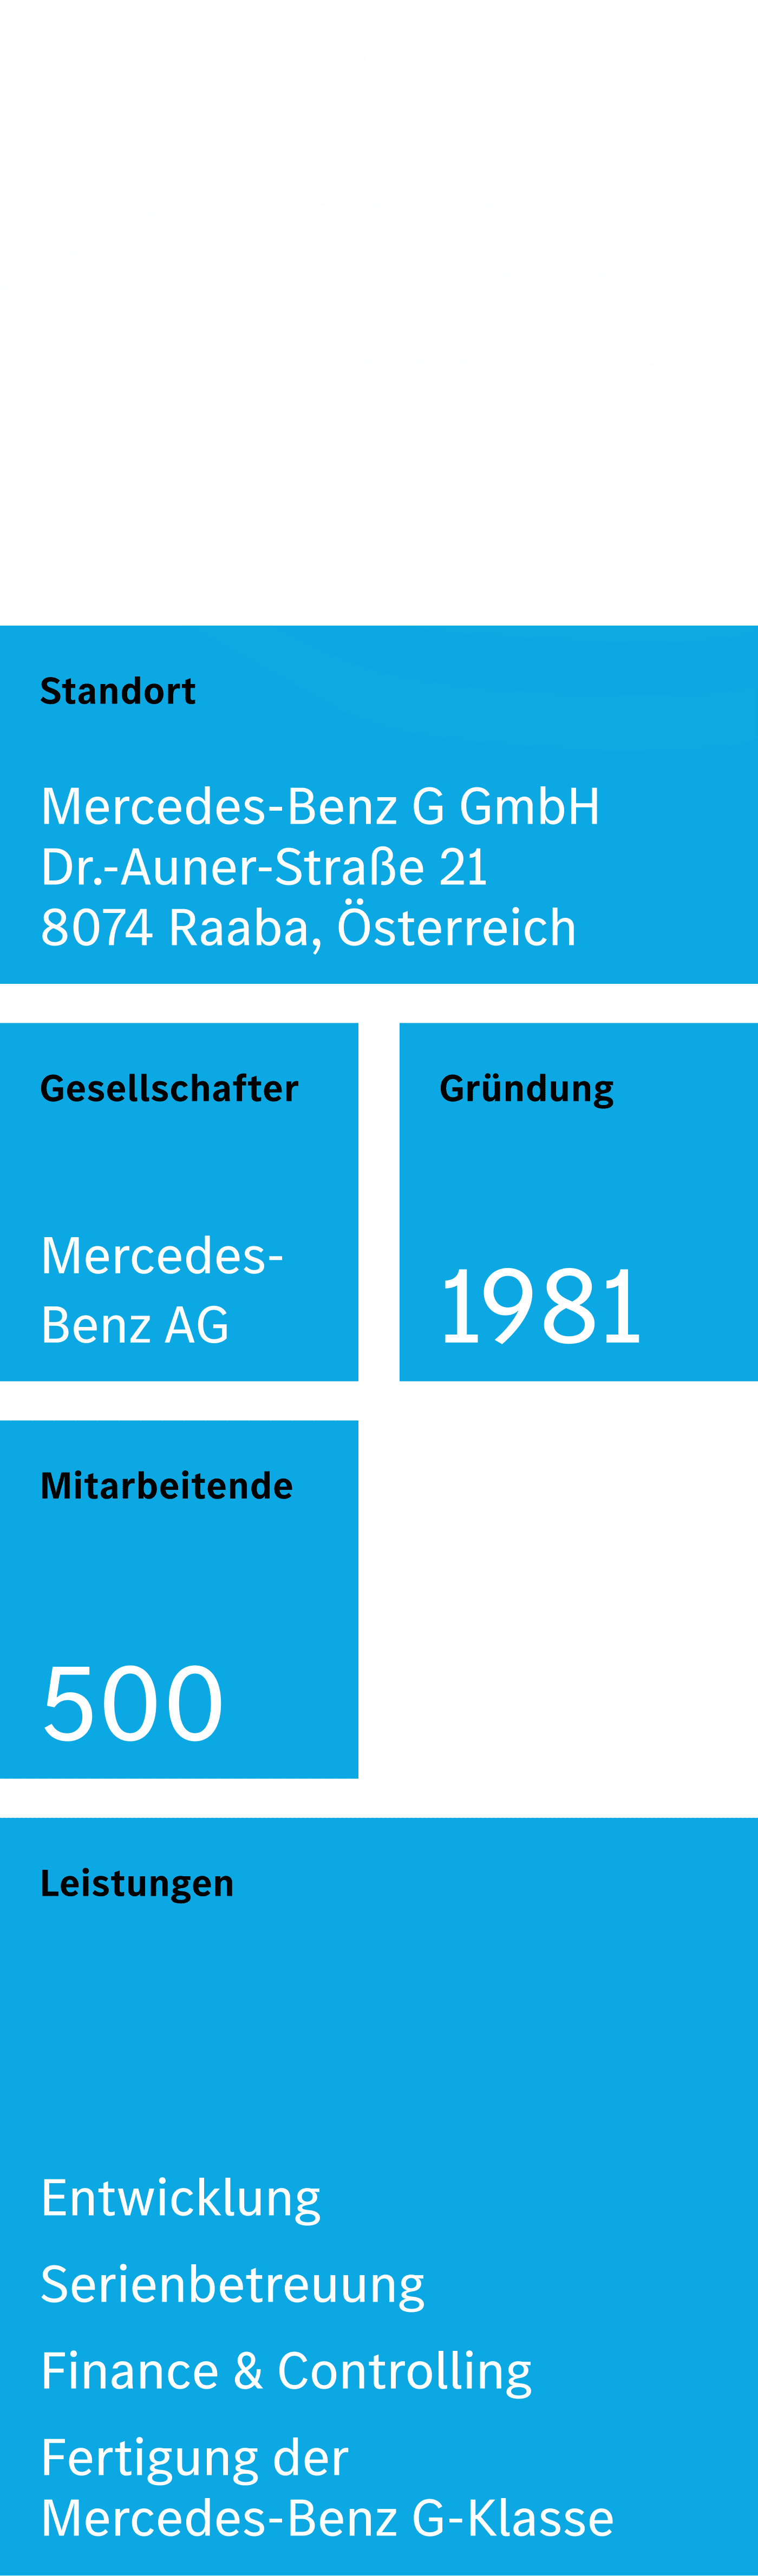 Zahlen und Fakten rund um die Mercedes-Benz G GmbH in Graz